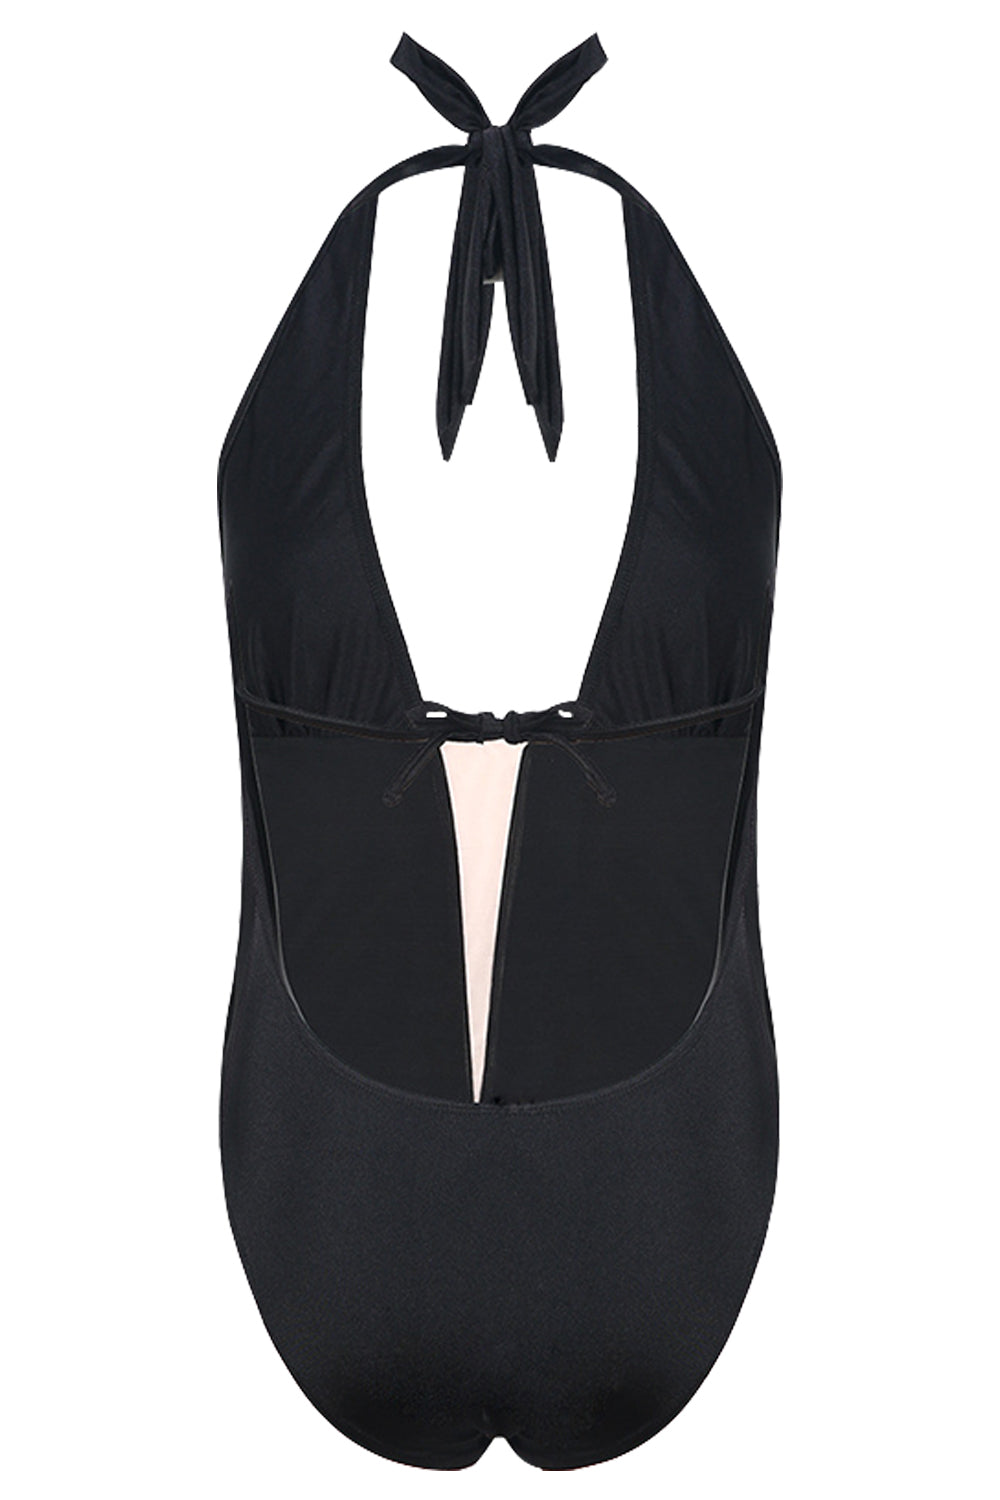 Iyasson Black Deep V-neckline Halter One-piece Swimsuit